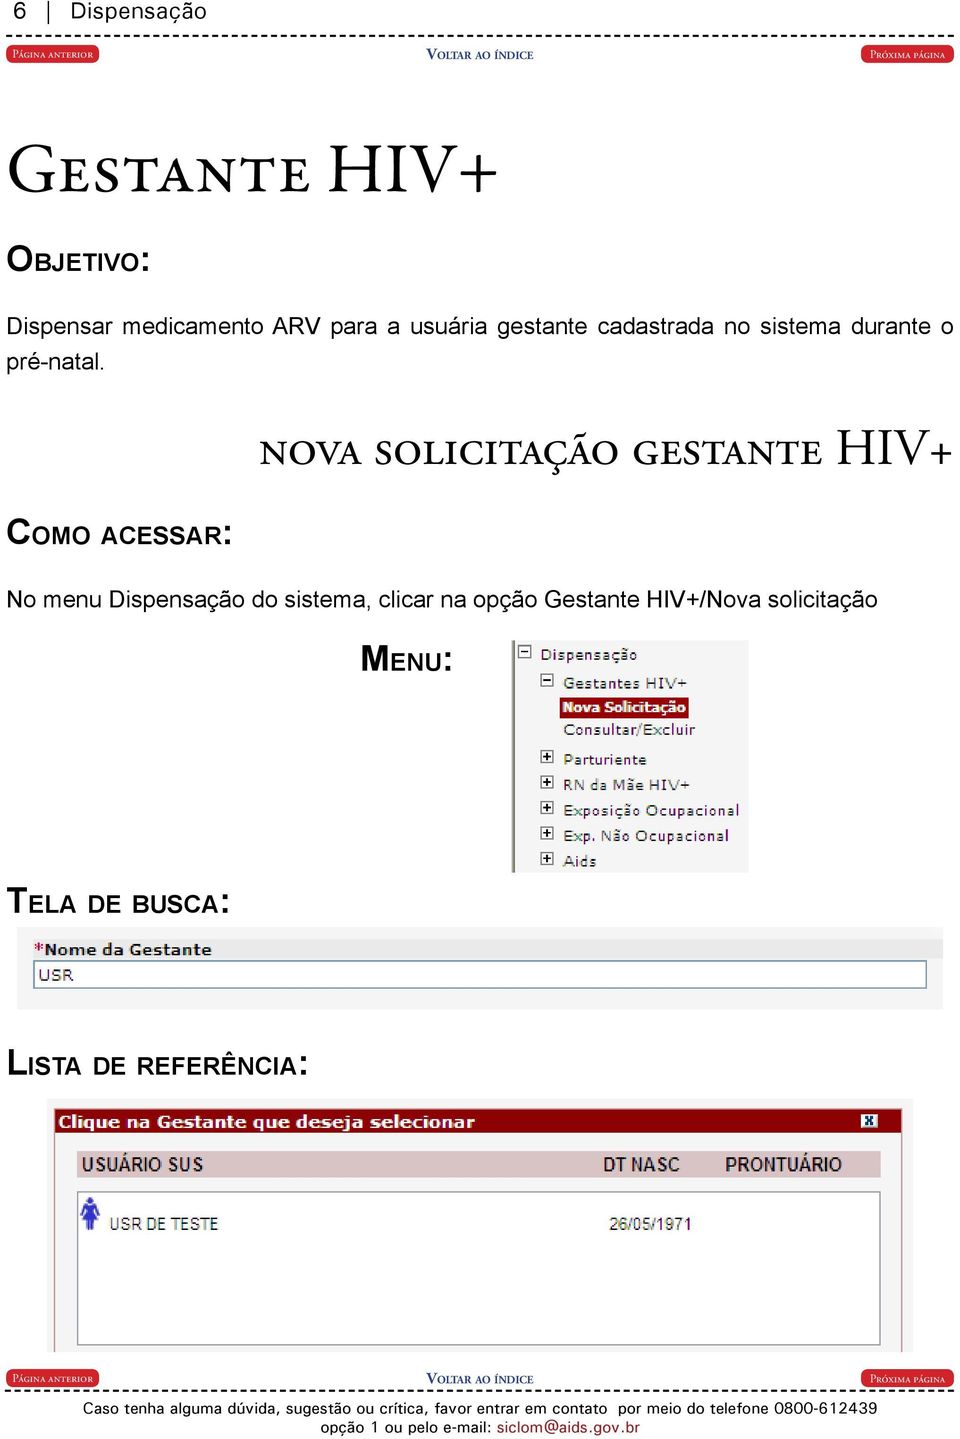 Como acessar: nova solicitação gestante HIV+ No menu Dispensação do